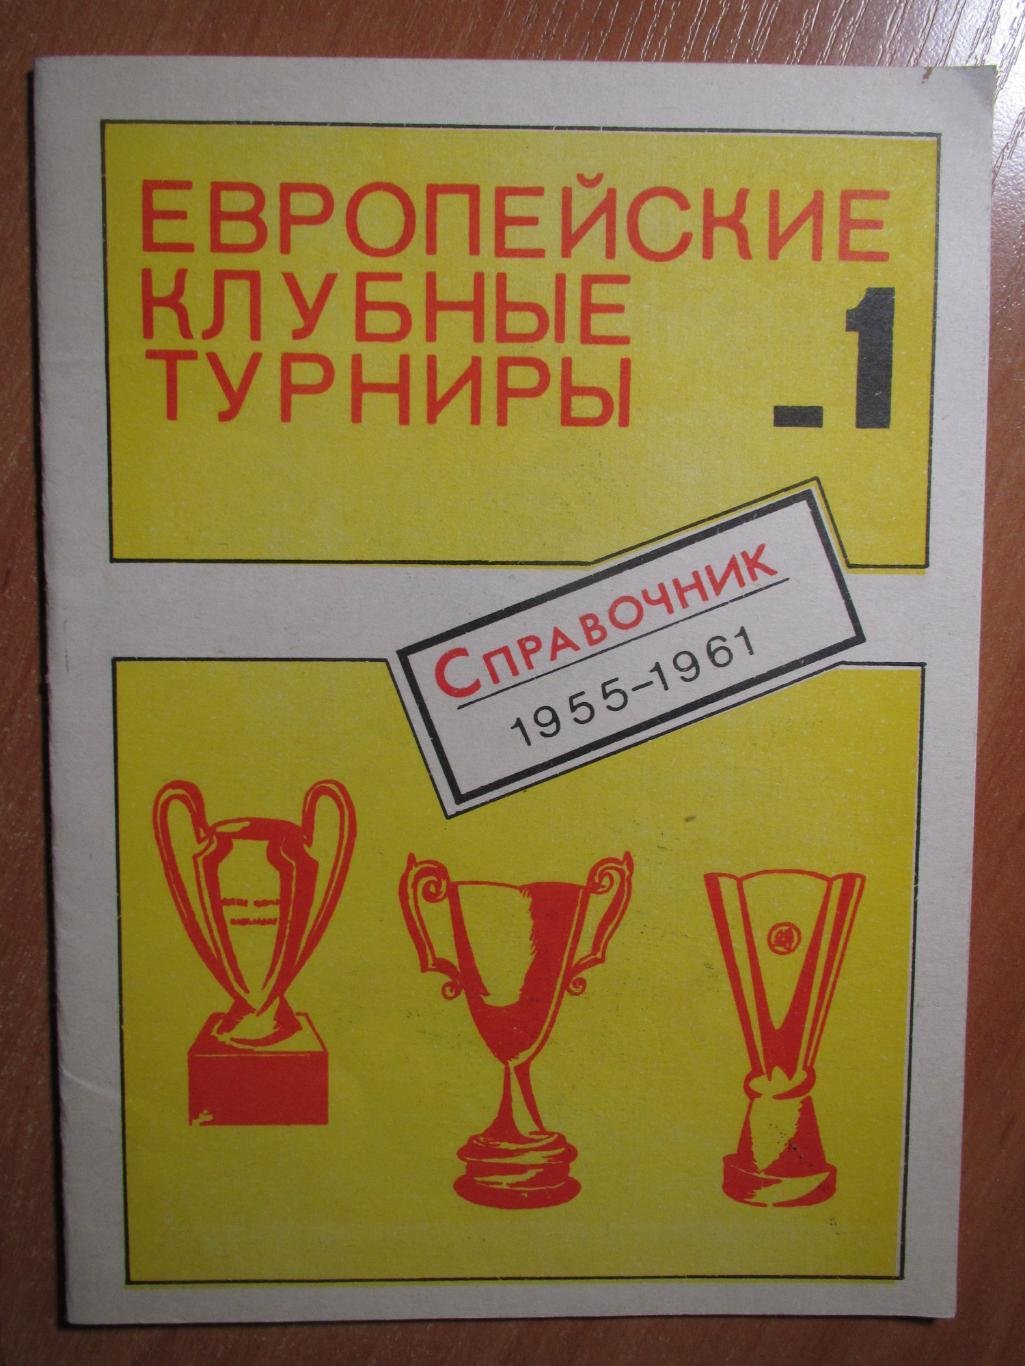 Европейские клубные турниры №1 ,1955-1961